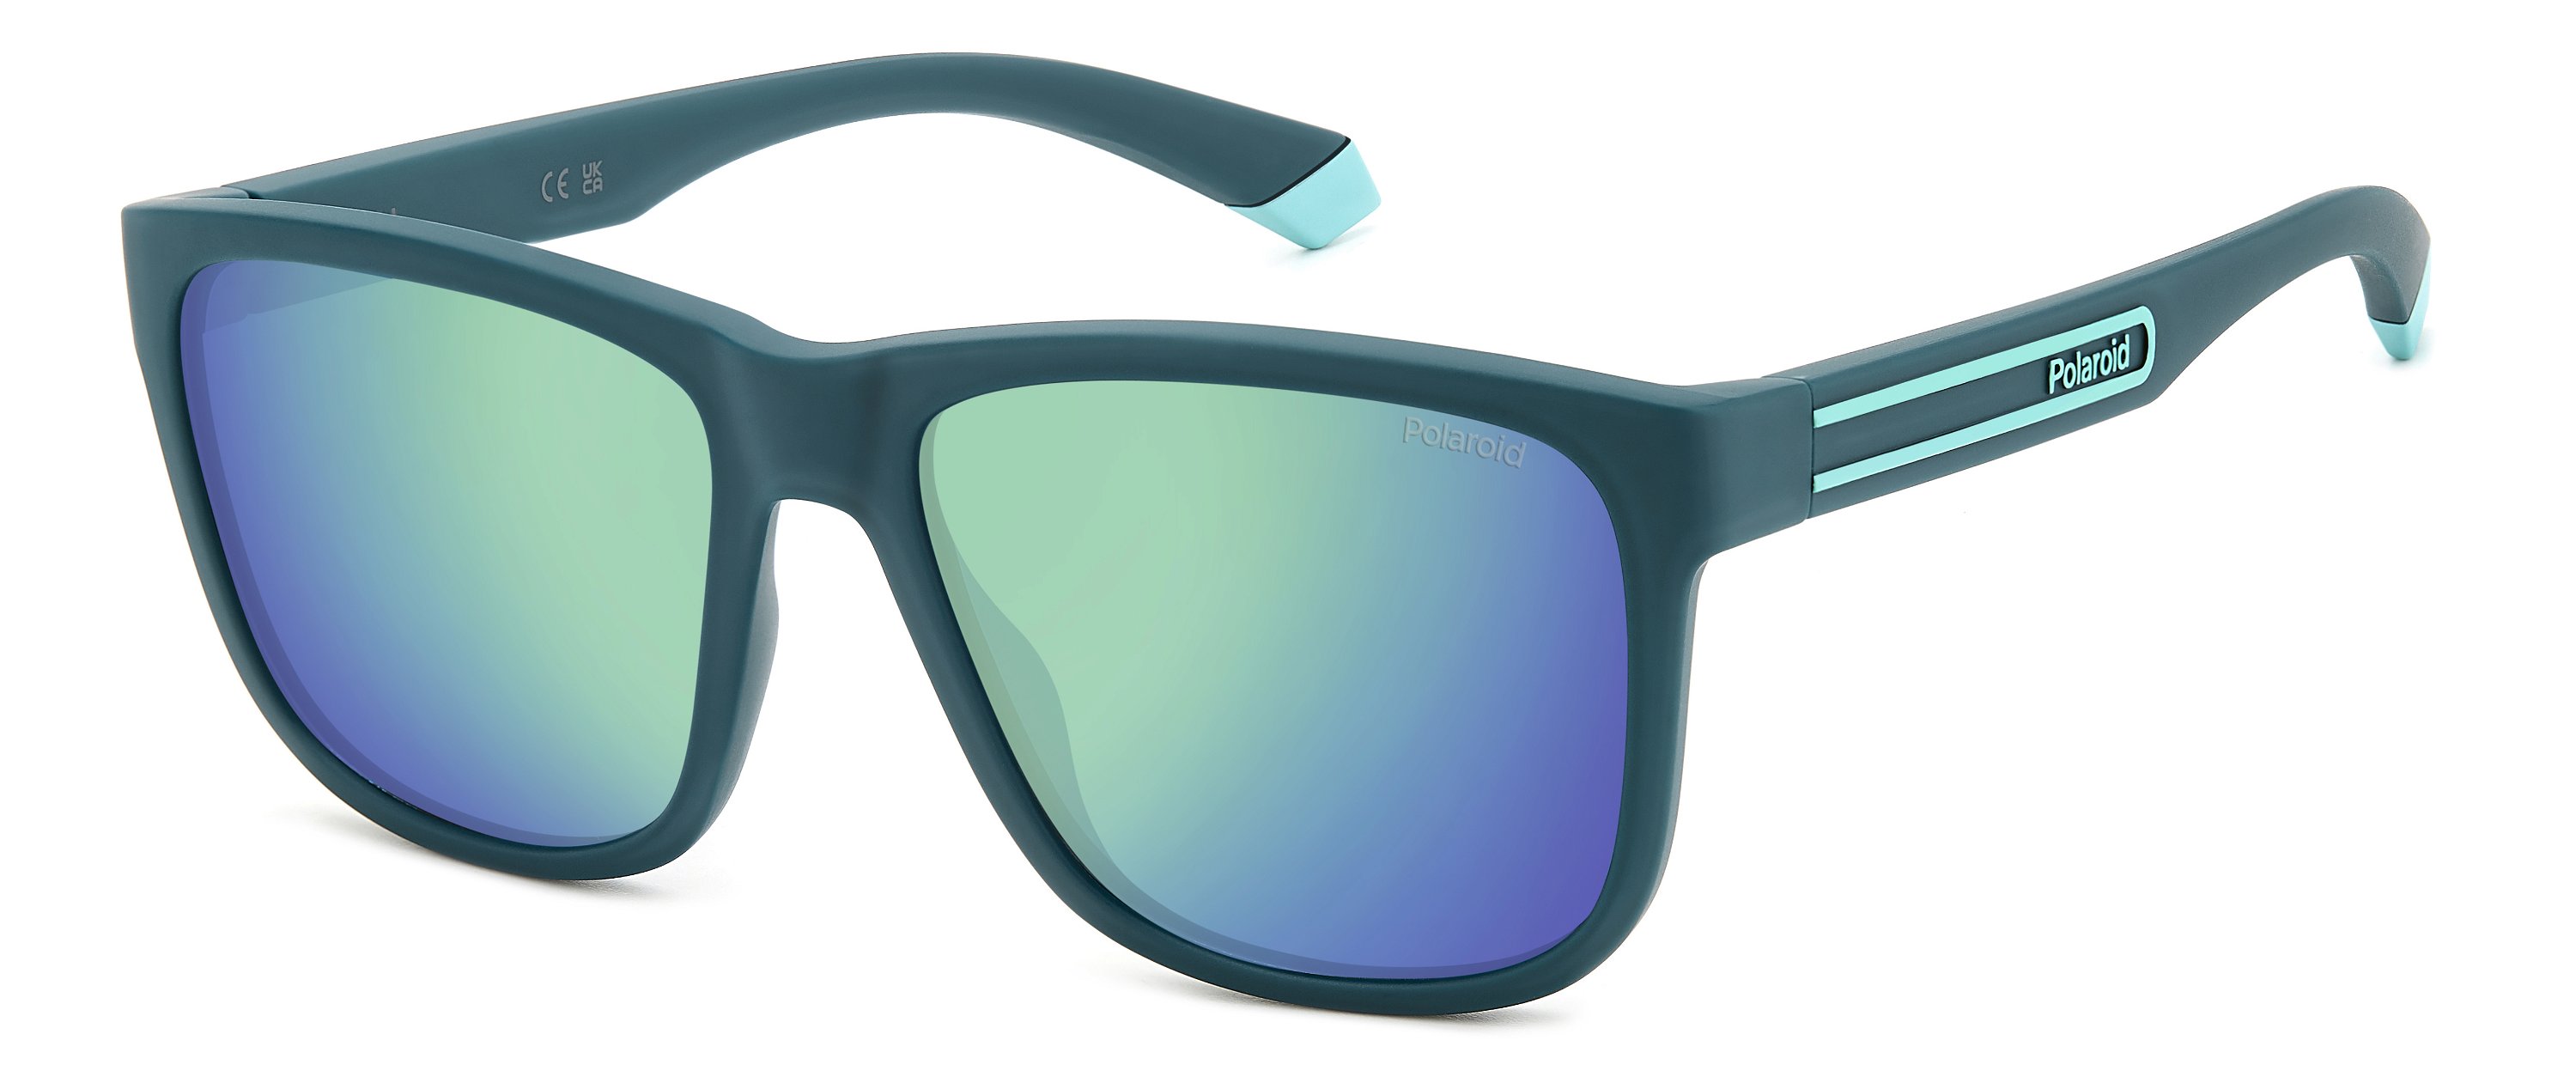 Das Bild zeigt die Sonnenbrille PLD2155S PYW von der Marke Polaroid in  blaugrün.